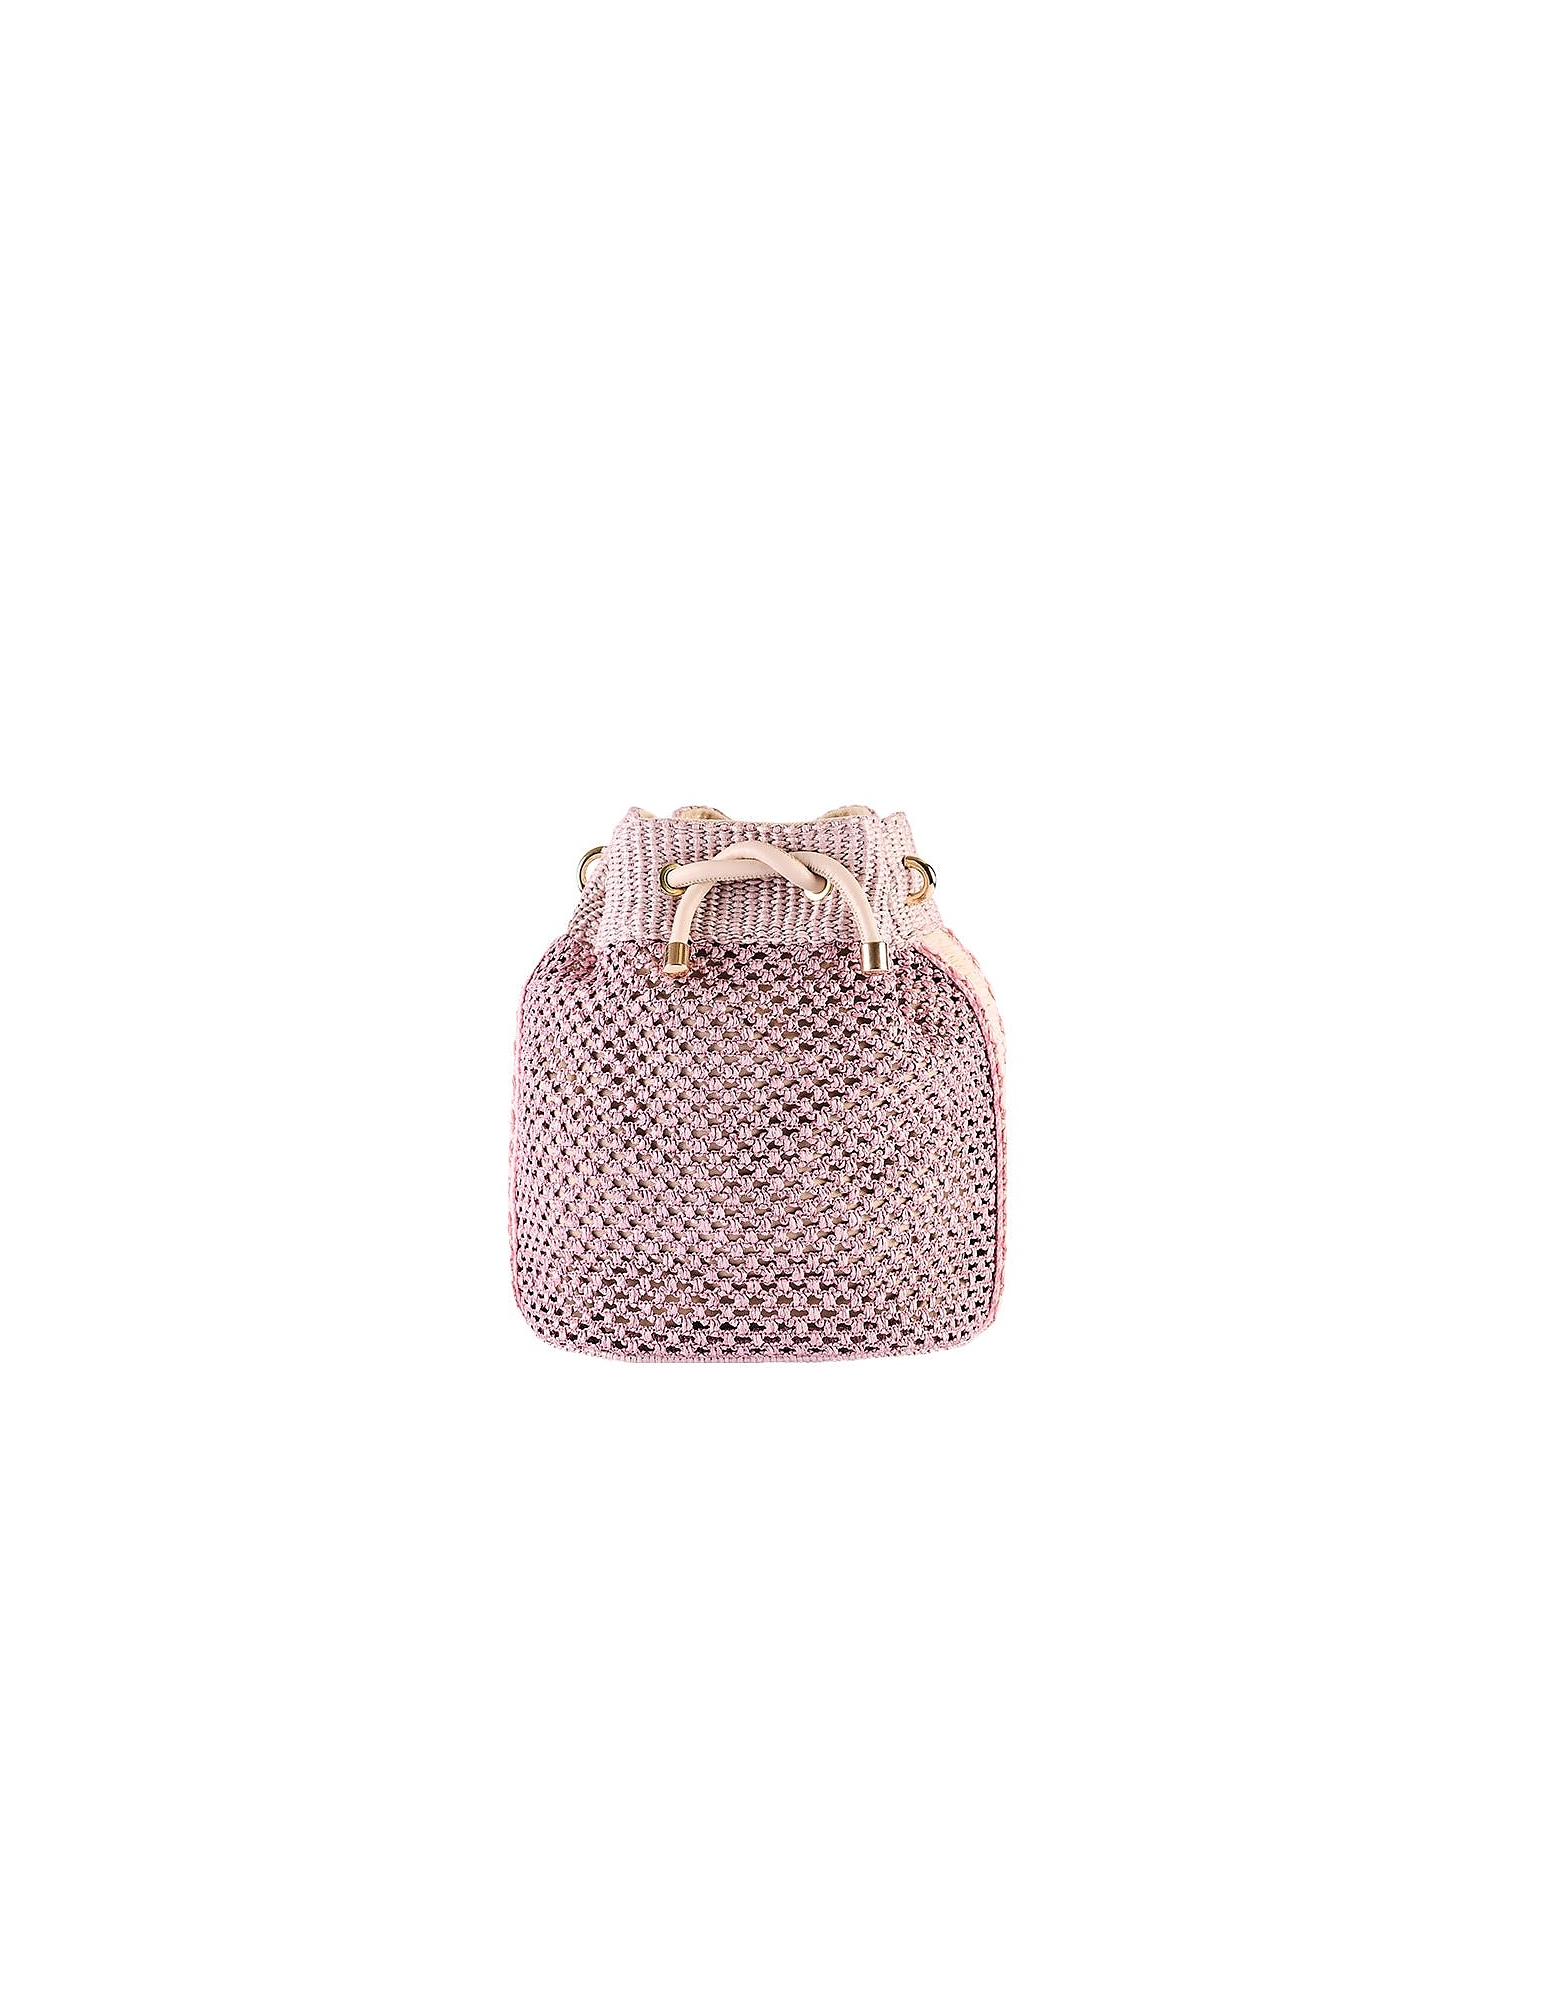 Viamailbag Designer Handbags Bouquet Drill - Bucket Bag In Rose